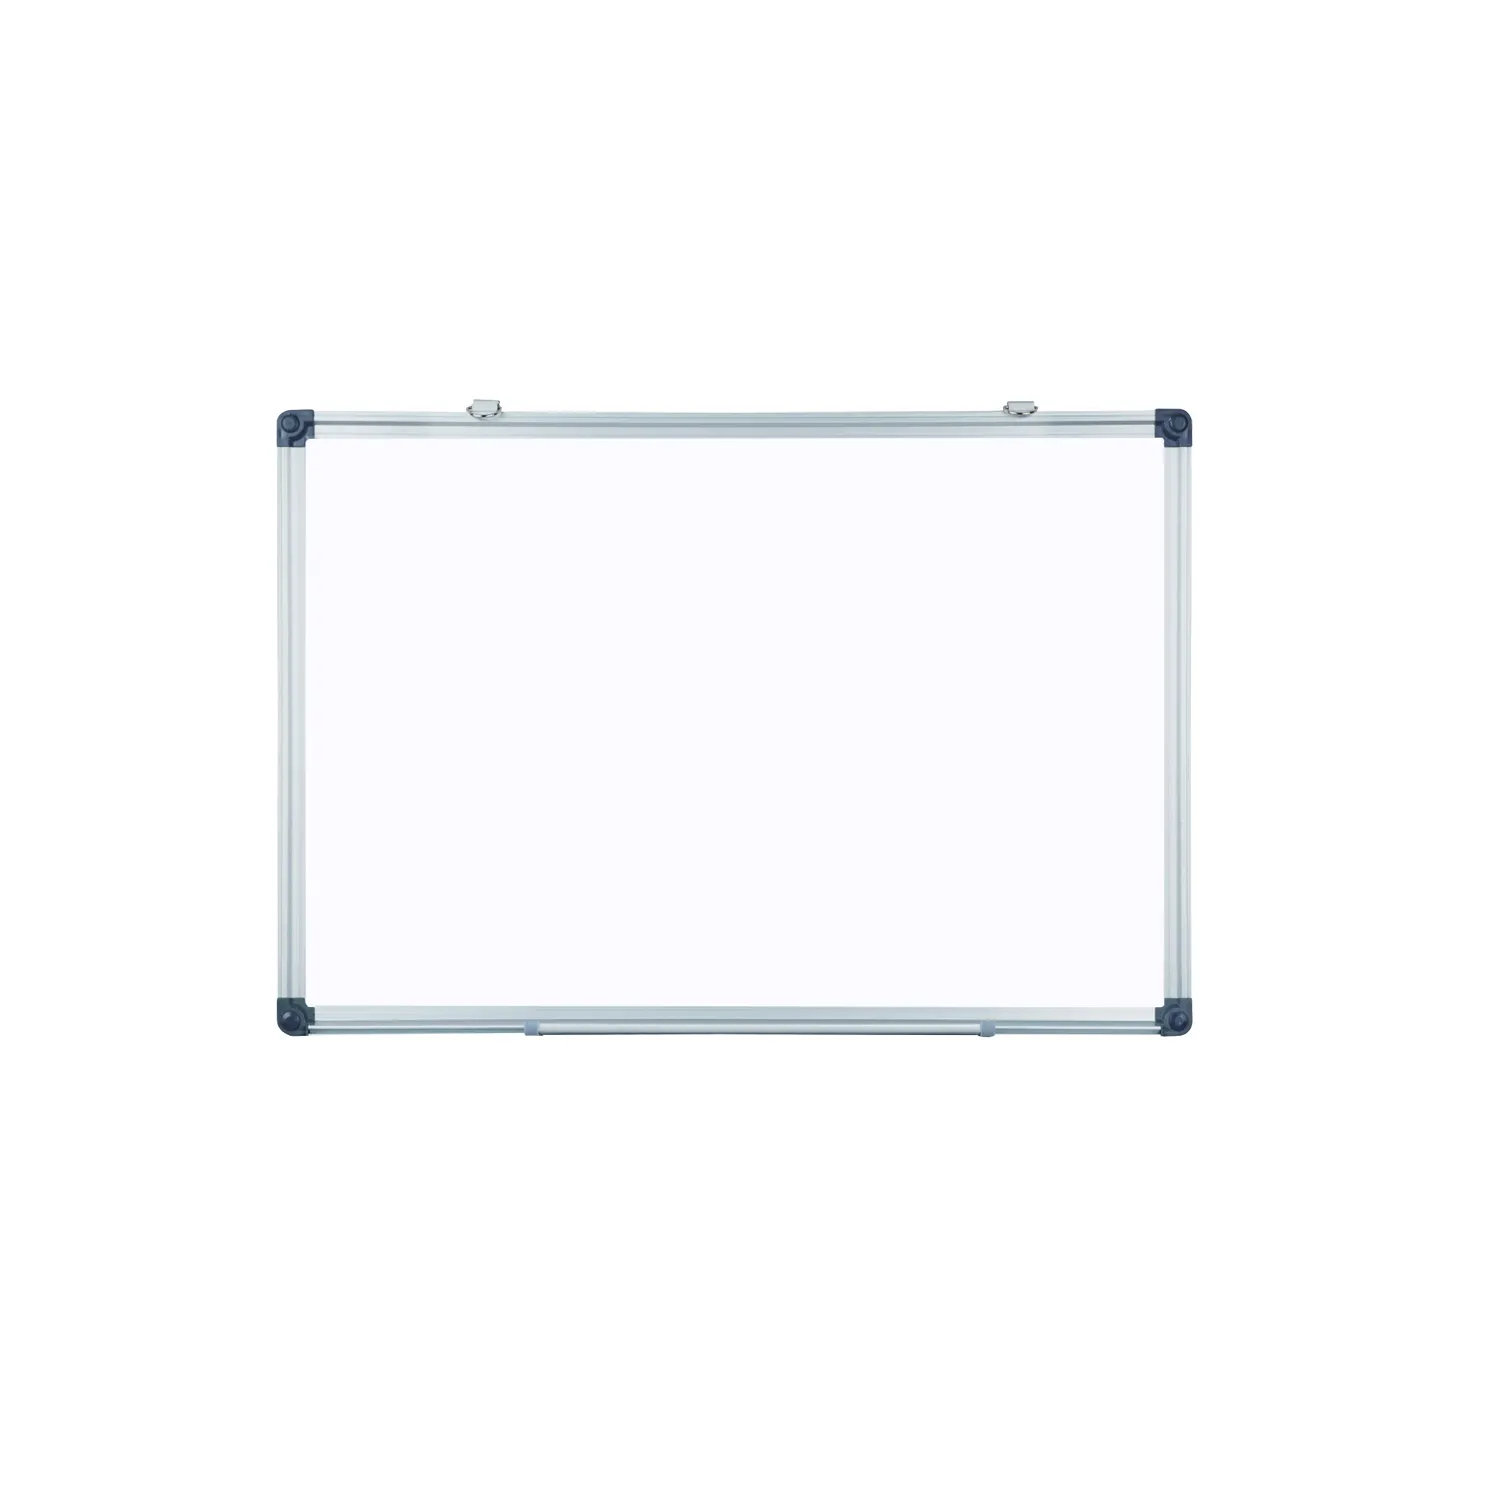 Erasable Sheet Metal Dry Erase Sheet Metal Magnetic Whiteboard With Magnet